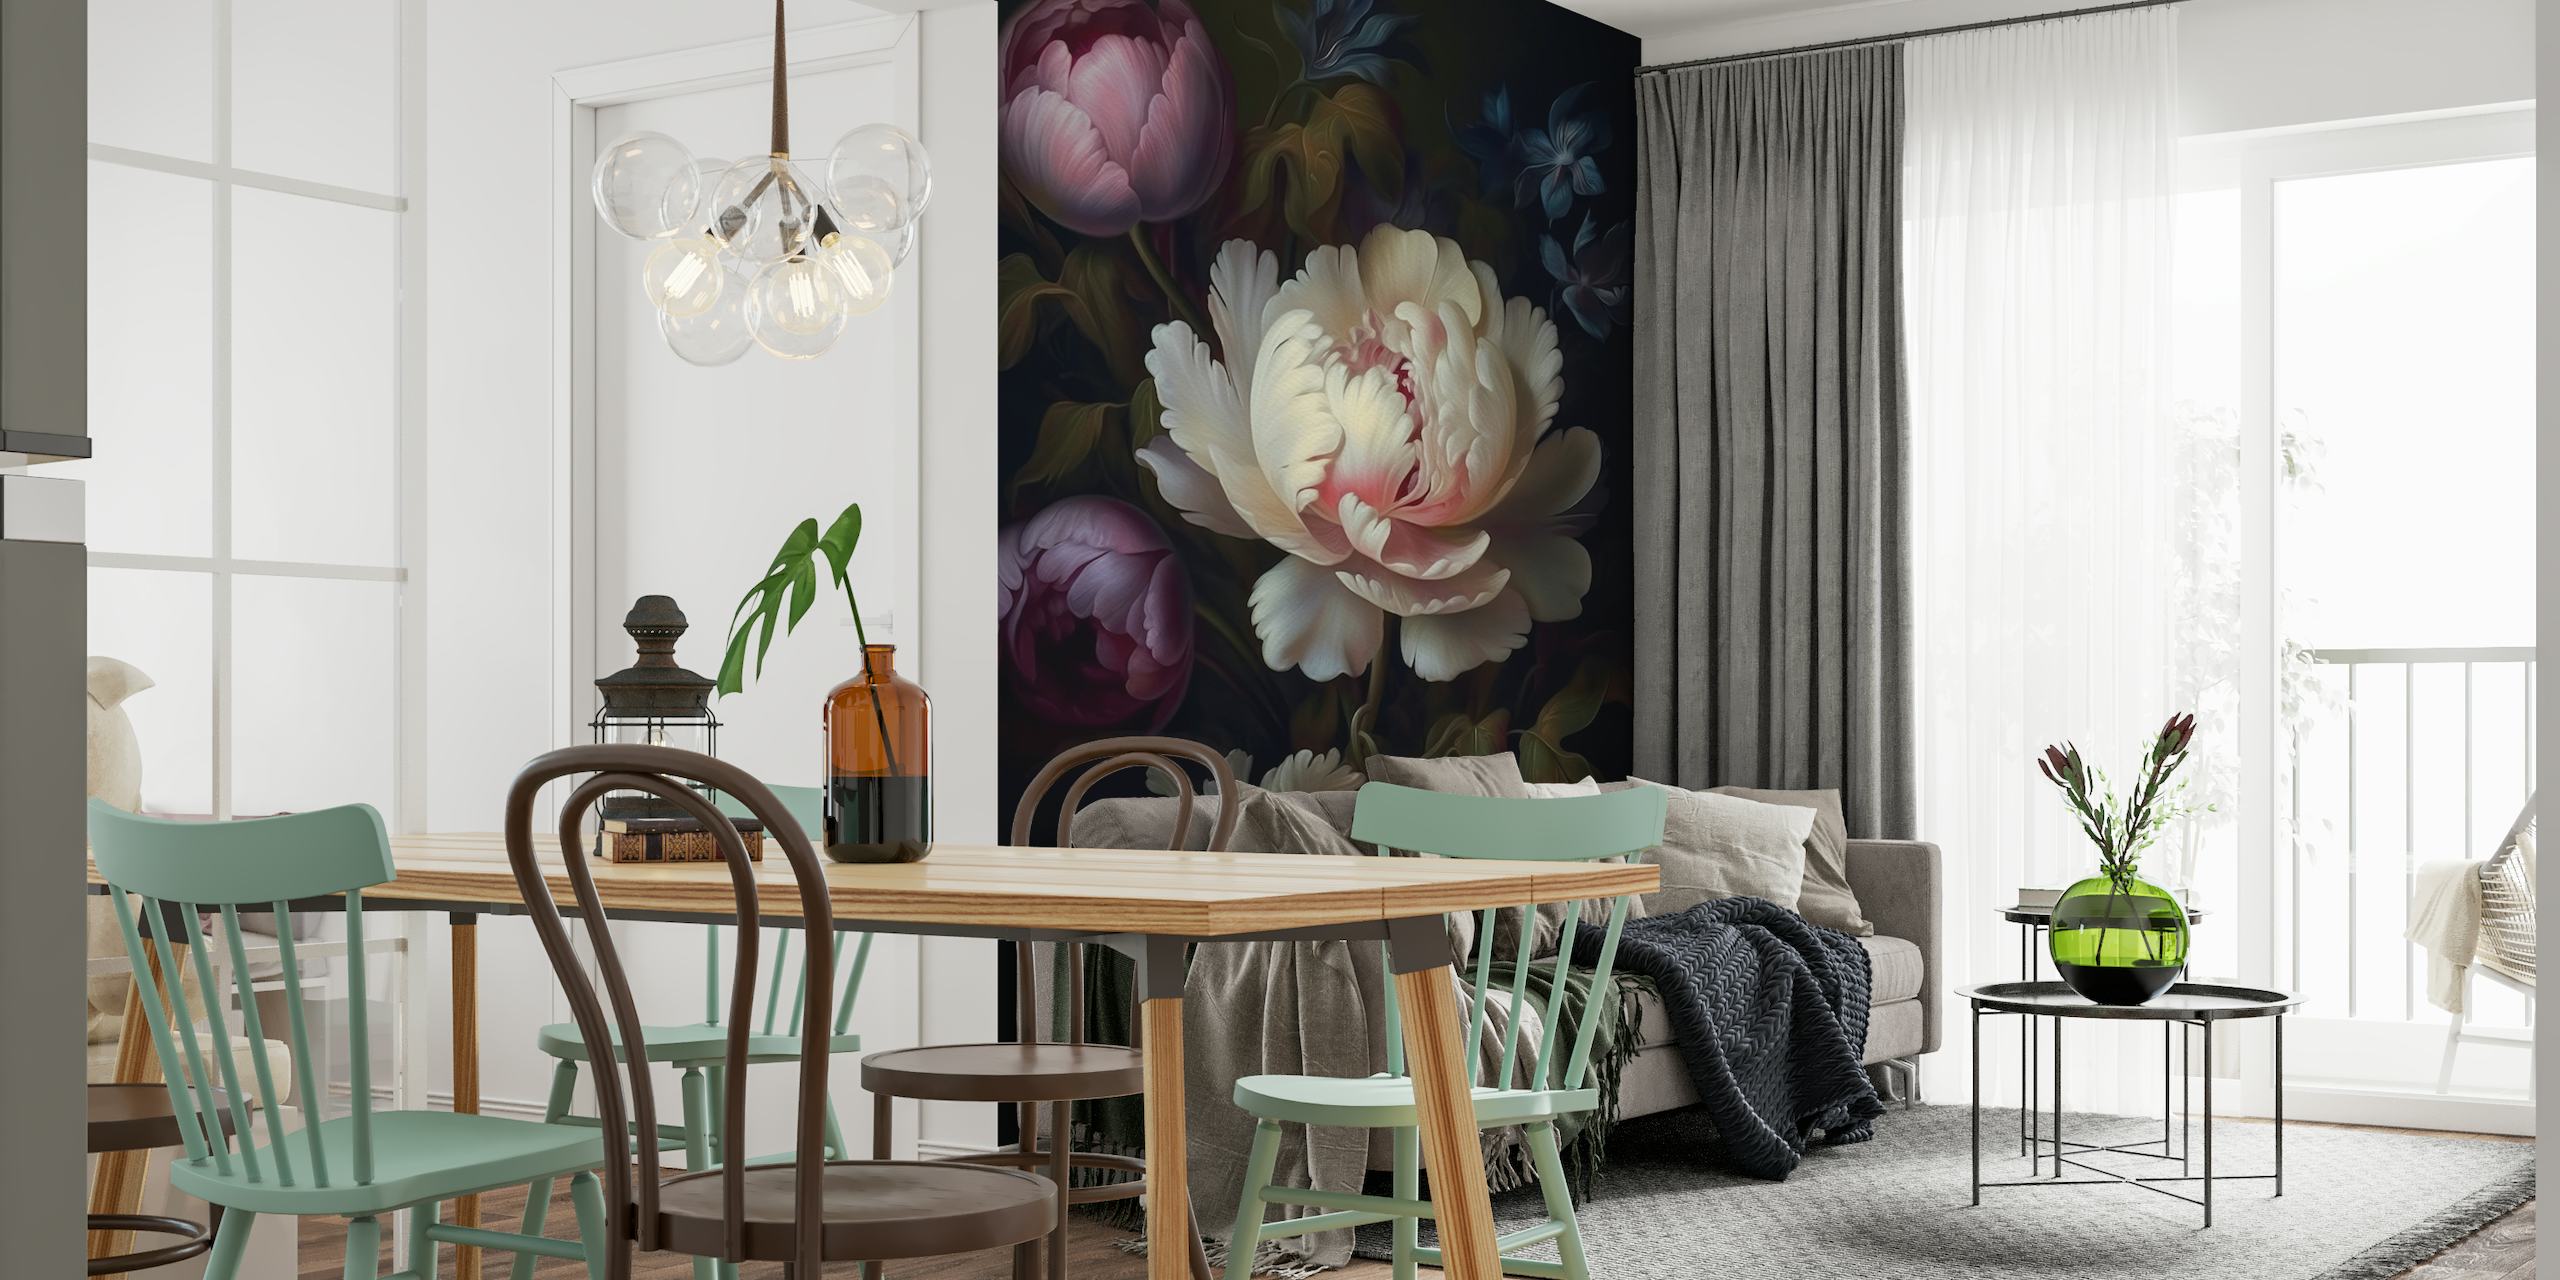 Dunkle florale Fototapete im Barockstil mit opulenten Pfingstrosen vor einer stimmungsvollen Nachtkulisse